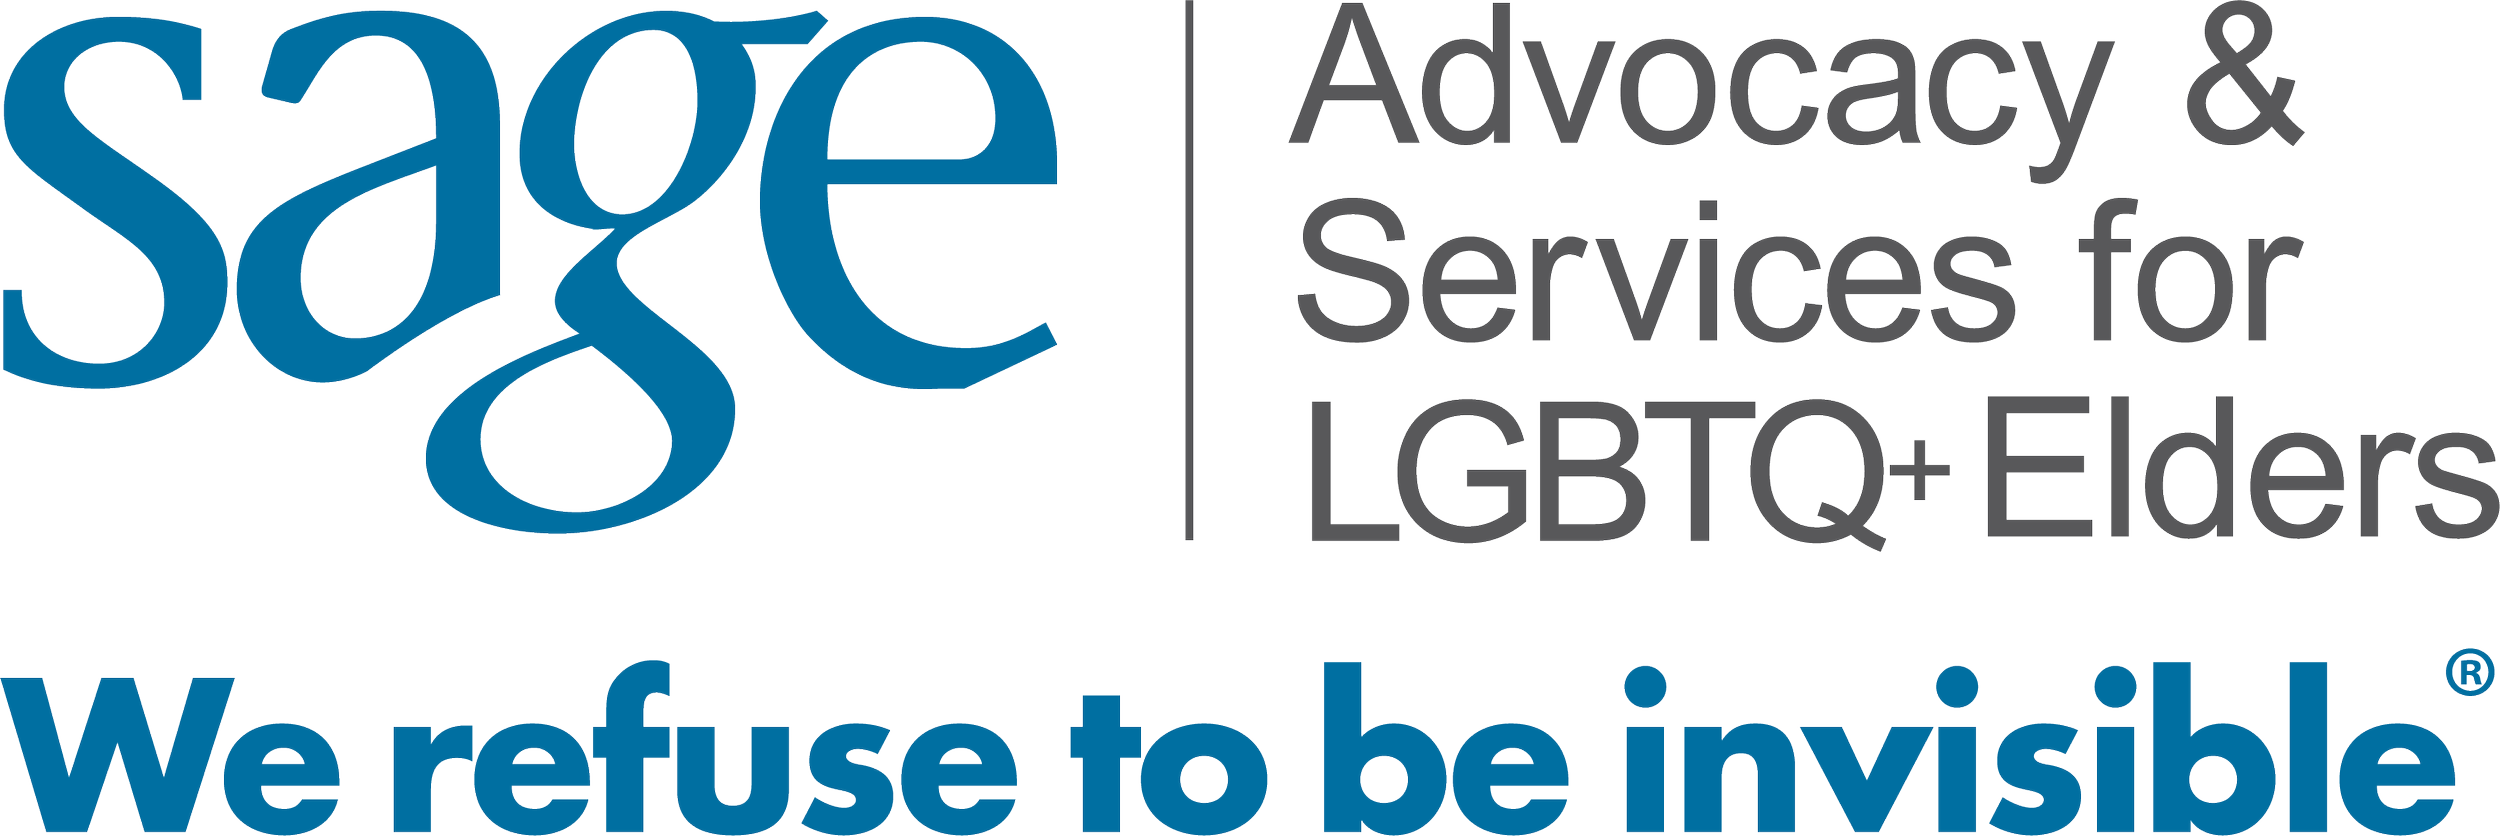 SAGECare Hotline for LGBTQ+ elders